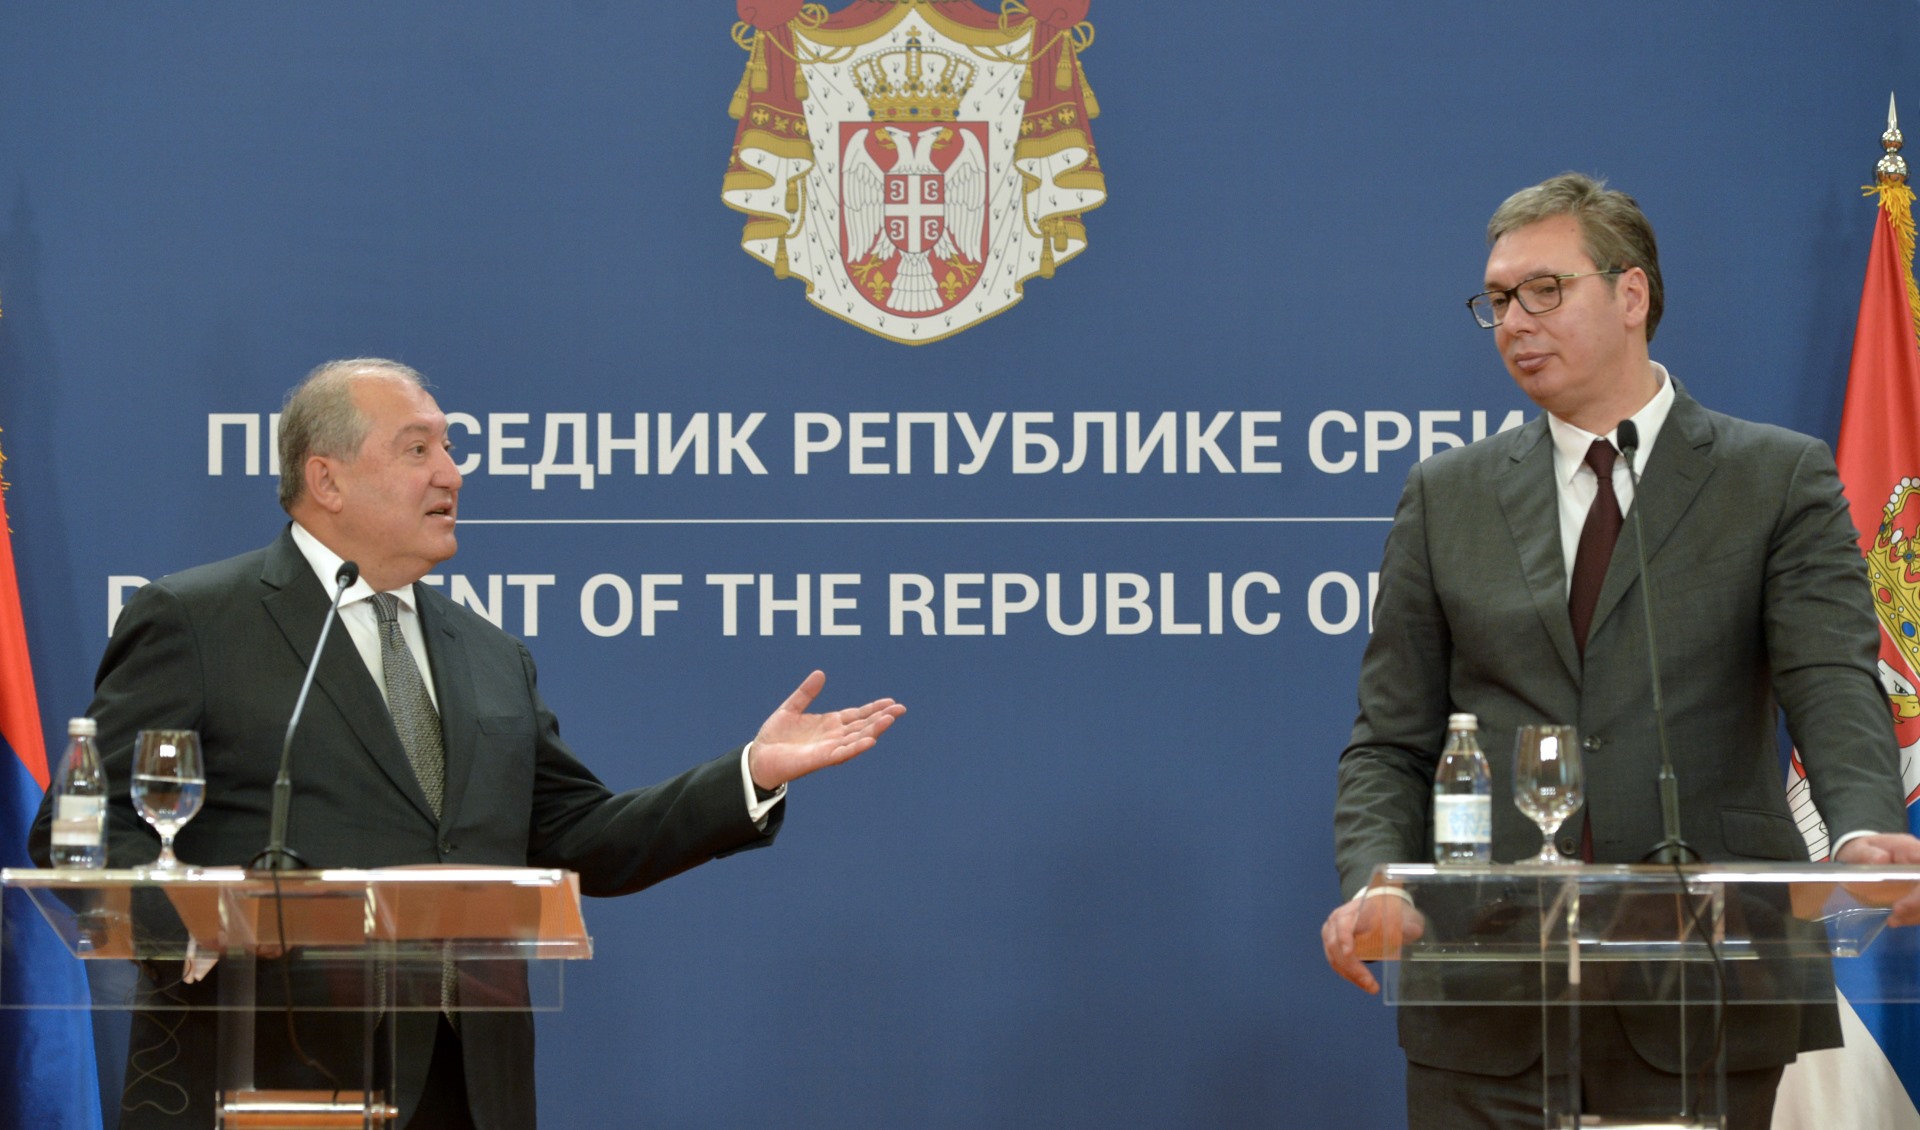 Predsednik Srbije Aleksandar Vucic sa predsednikom Jermenije Armenom Sarkisijanom